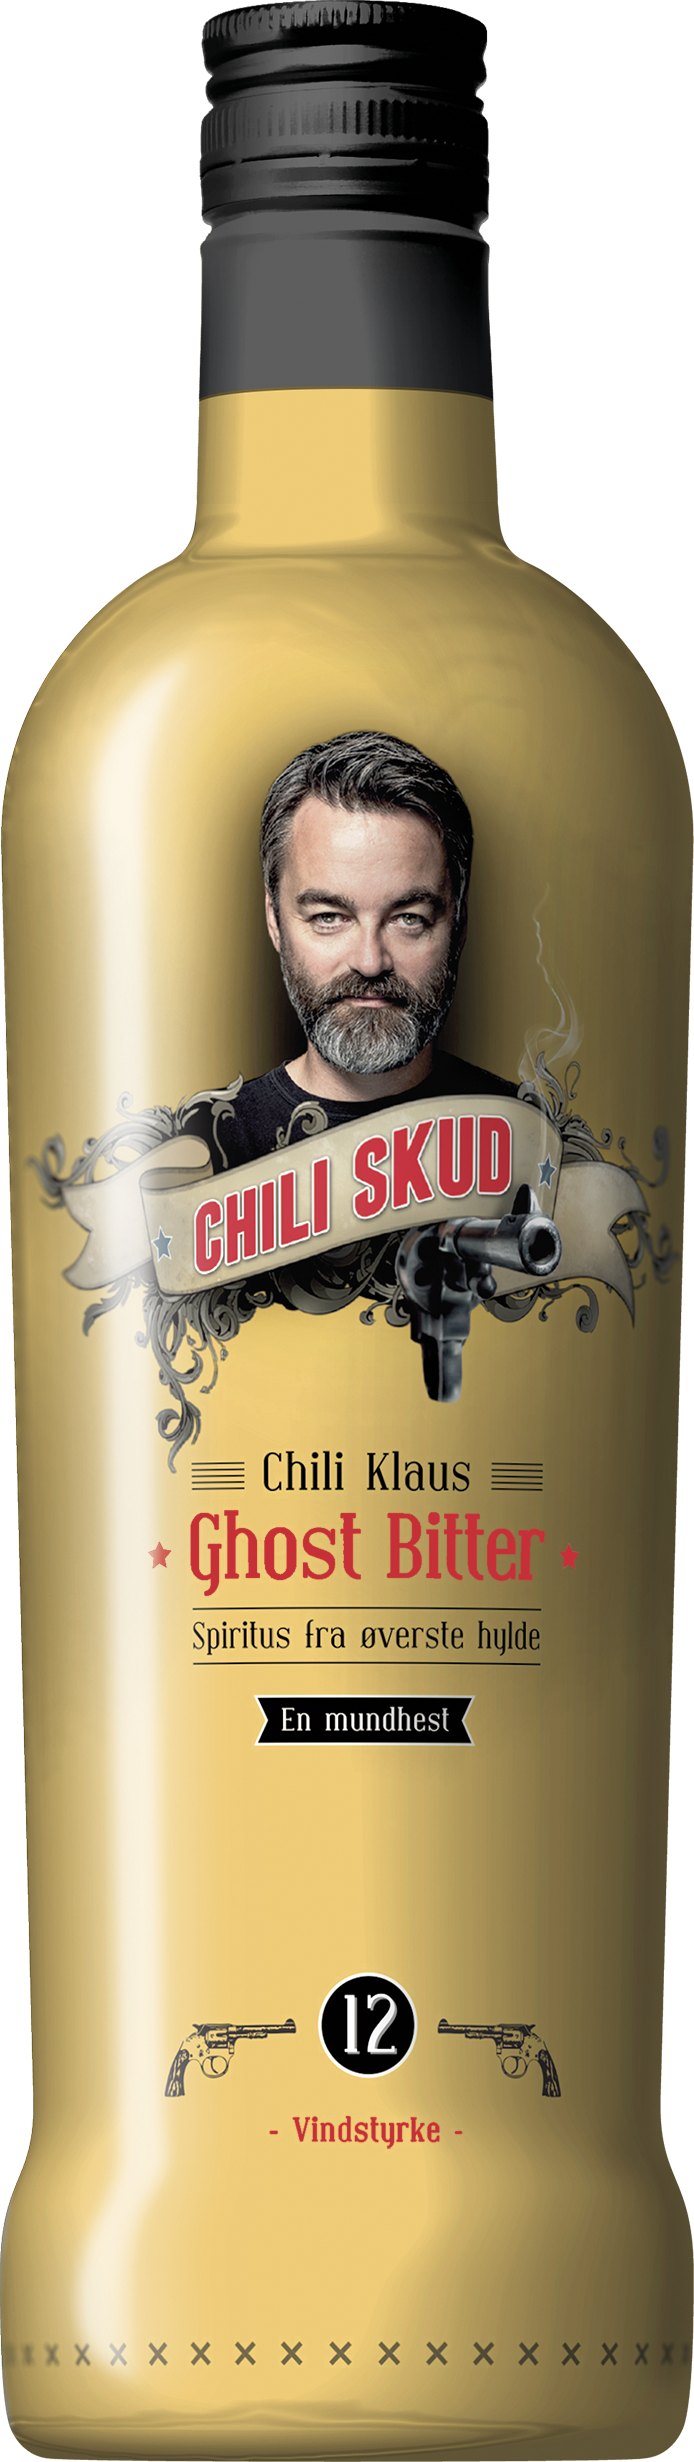 Original Egen omgive Chili Klaus Chili Skud Ghost Bitter Vindstyrke 12, 70 cl. - 20% - SHOTS -  VIN MED MERE .DK